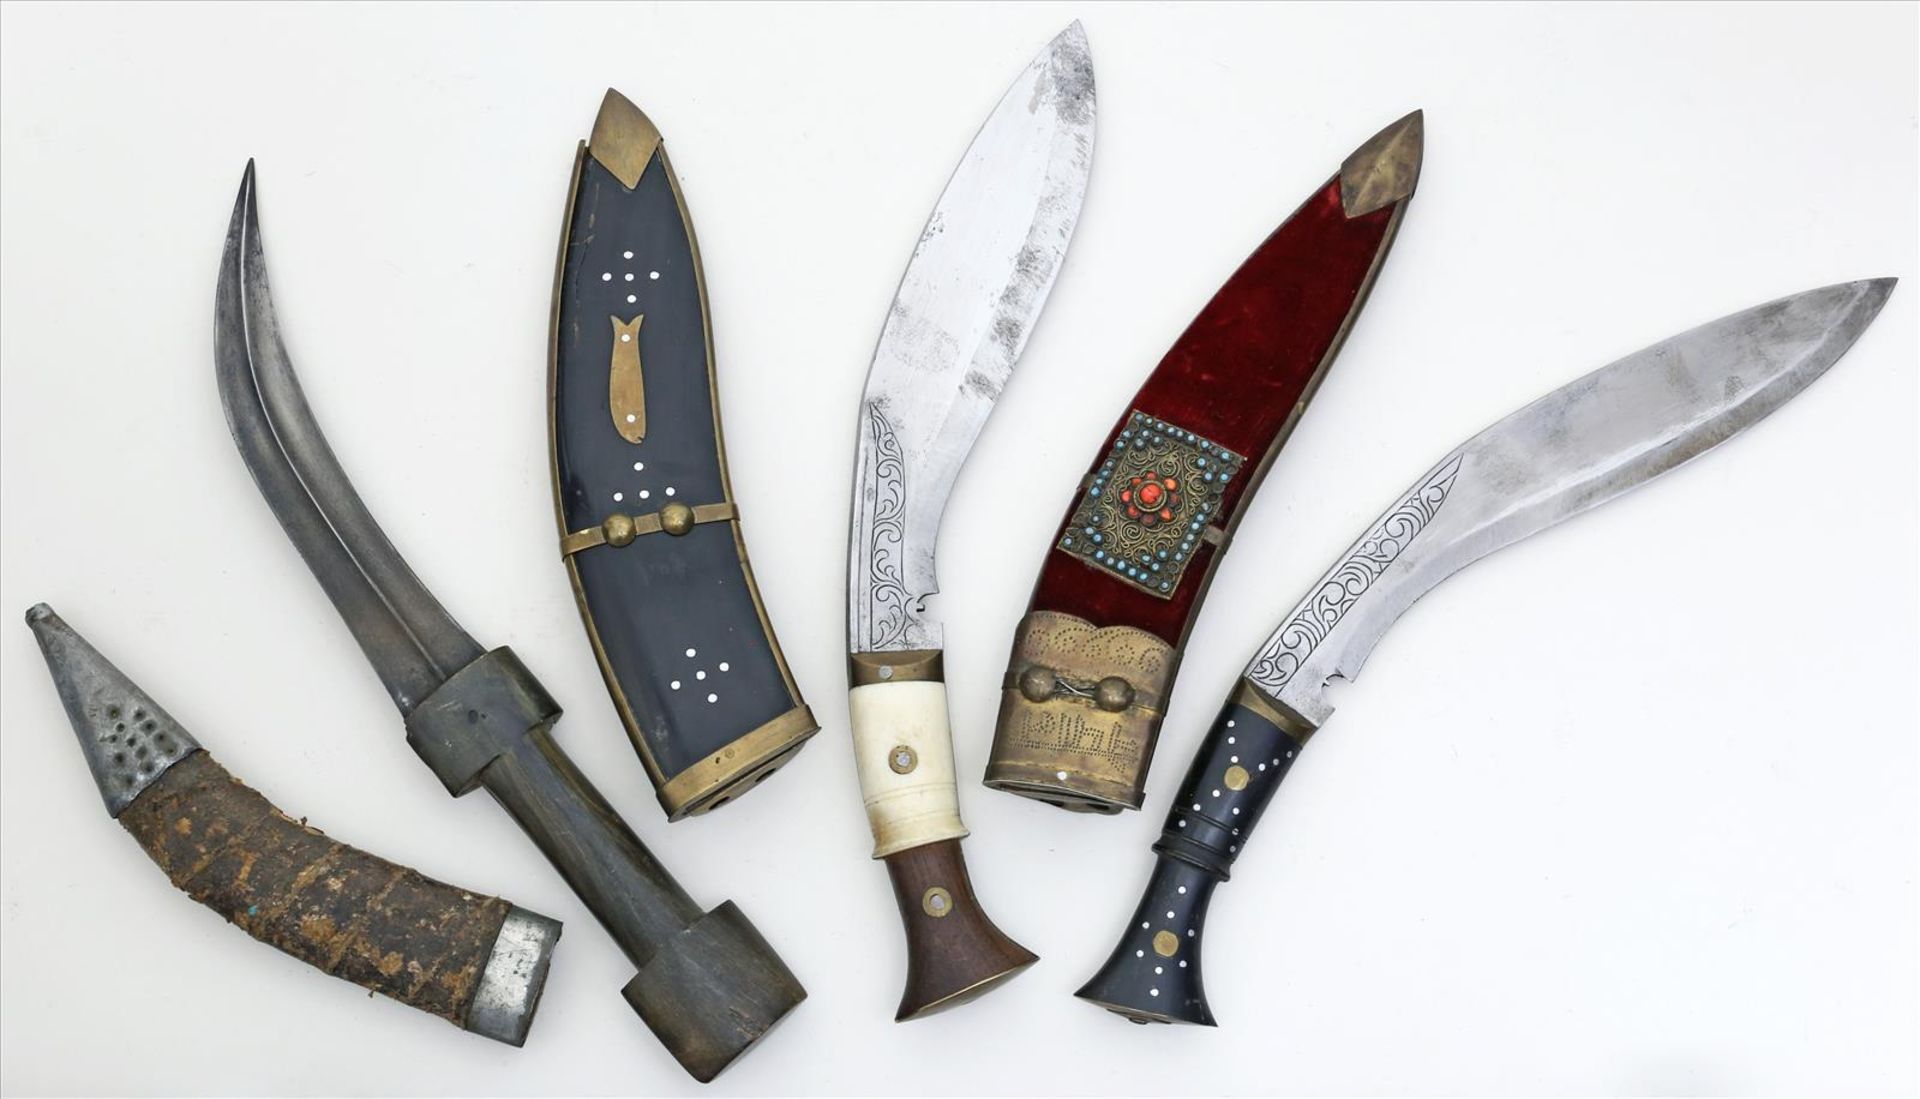 2 Kukri-Messer und Jambiya-Dolch.Eisenklingen. Bein- bzw. Holzgriffe. Gebrauchsspuren, teils